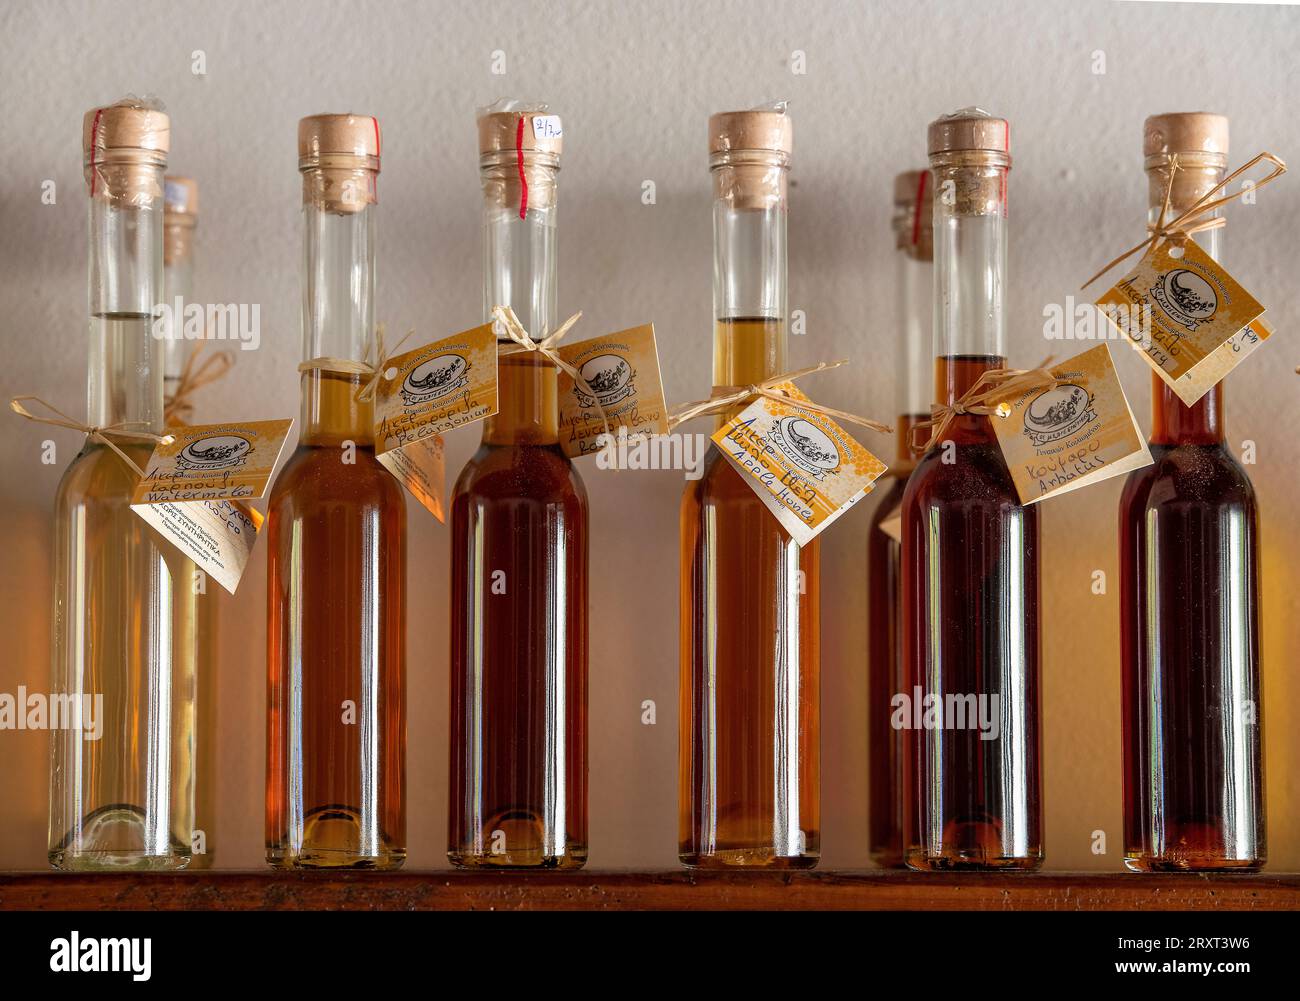 rangée de bouteilles pleines d'huiles d'olive aromatisées sur une étagère avec des étiquettes en grèce Banque D'Images